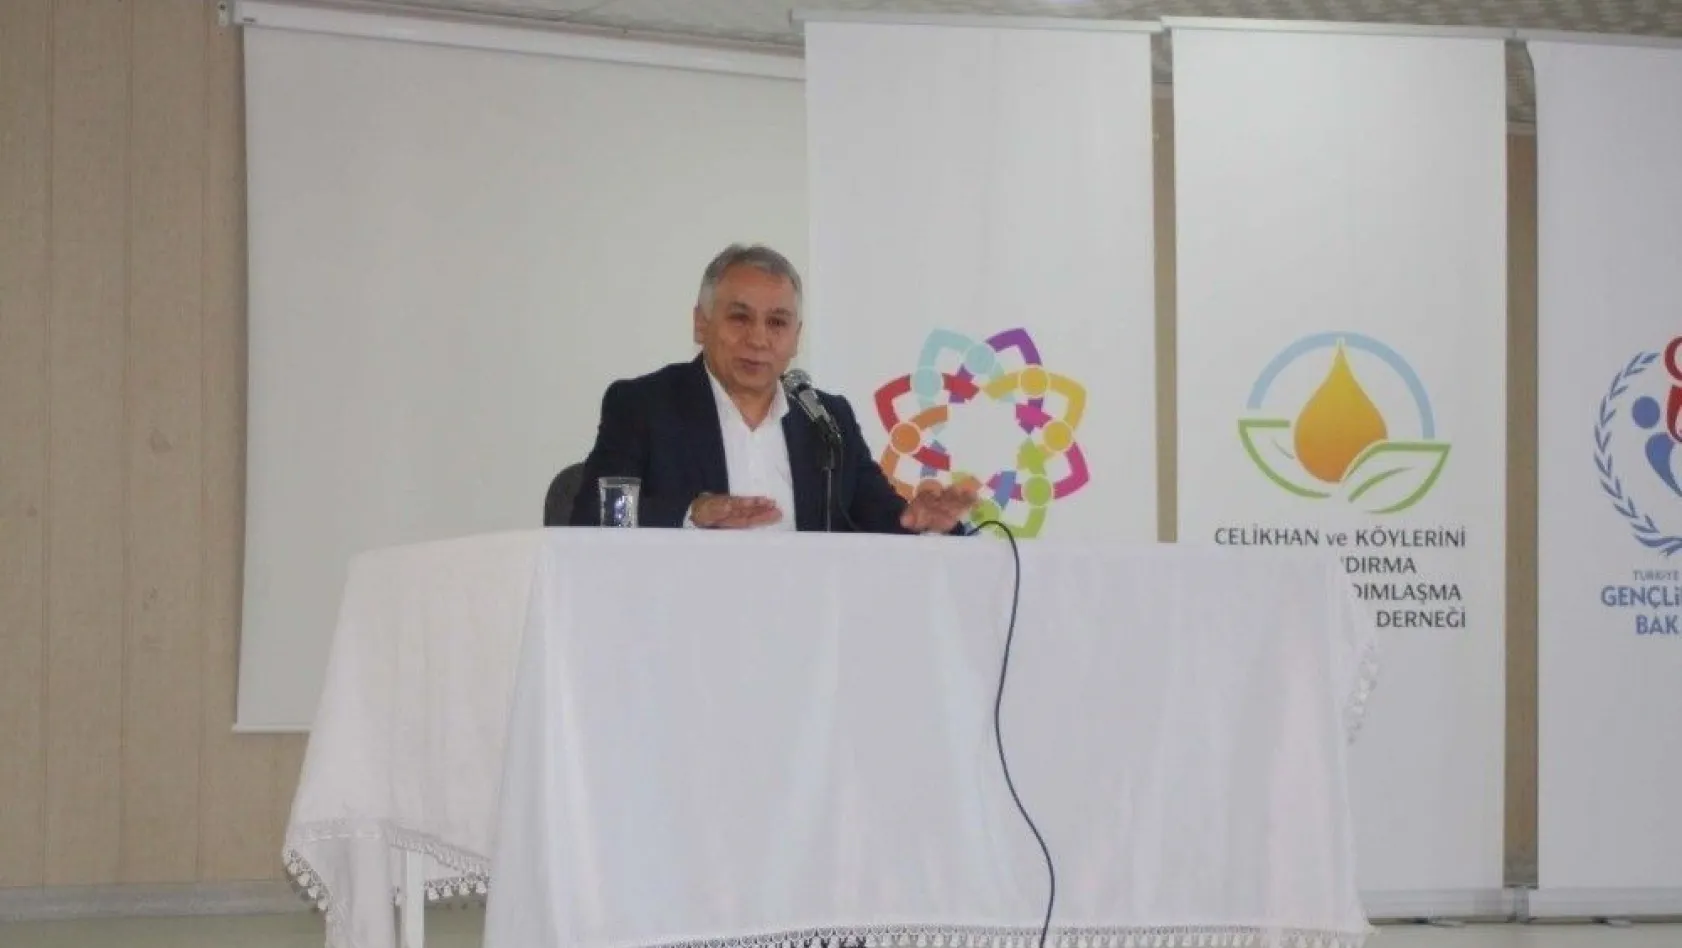 Milletvekili Boynukara 'Hedef Ülke Türkiye' konulu konferans verdi
